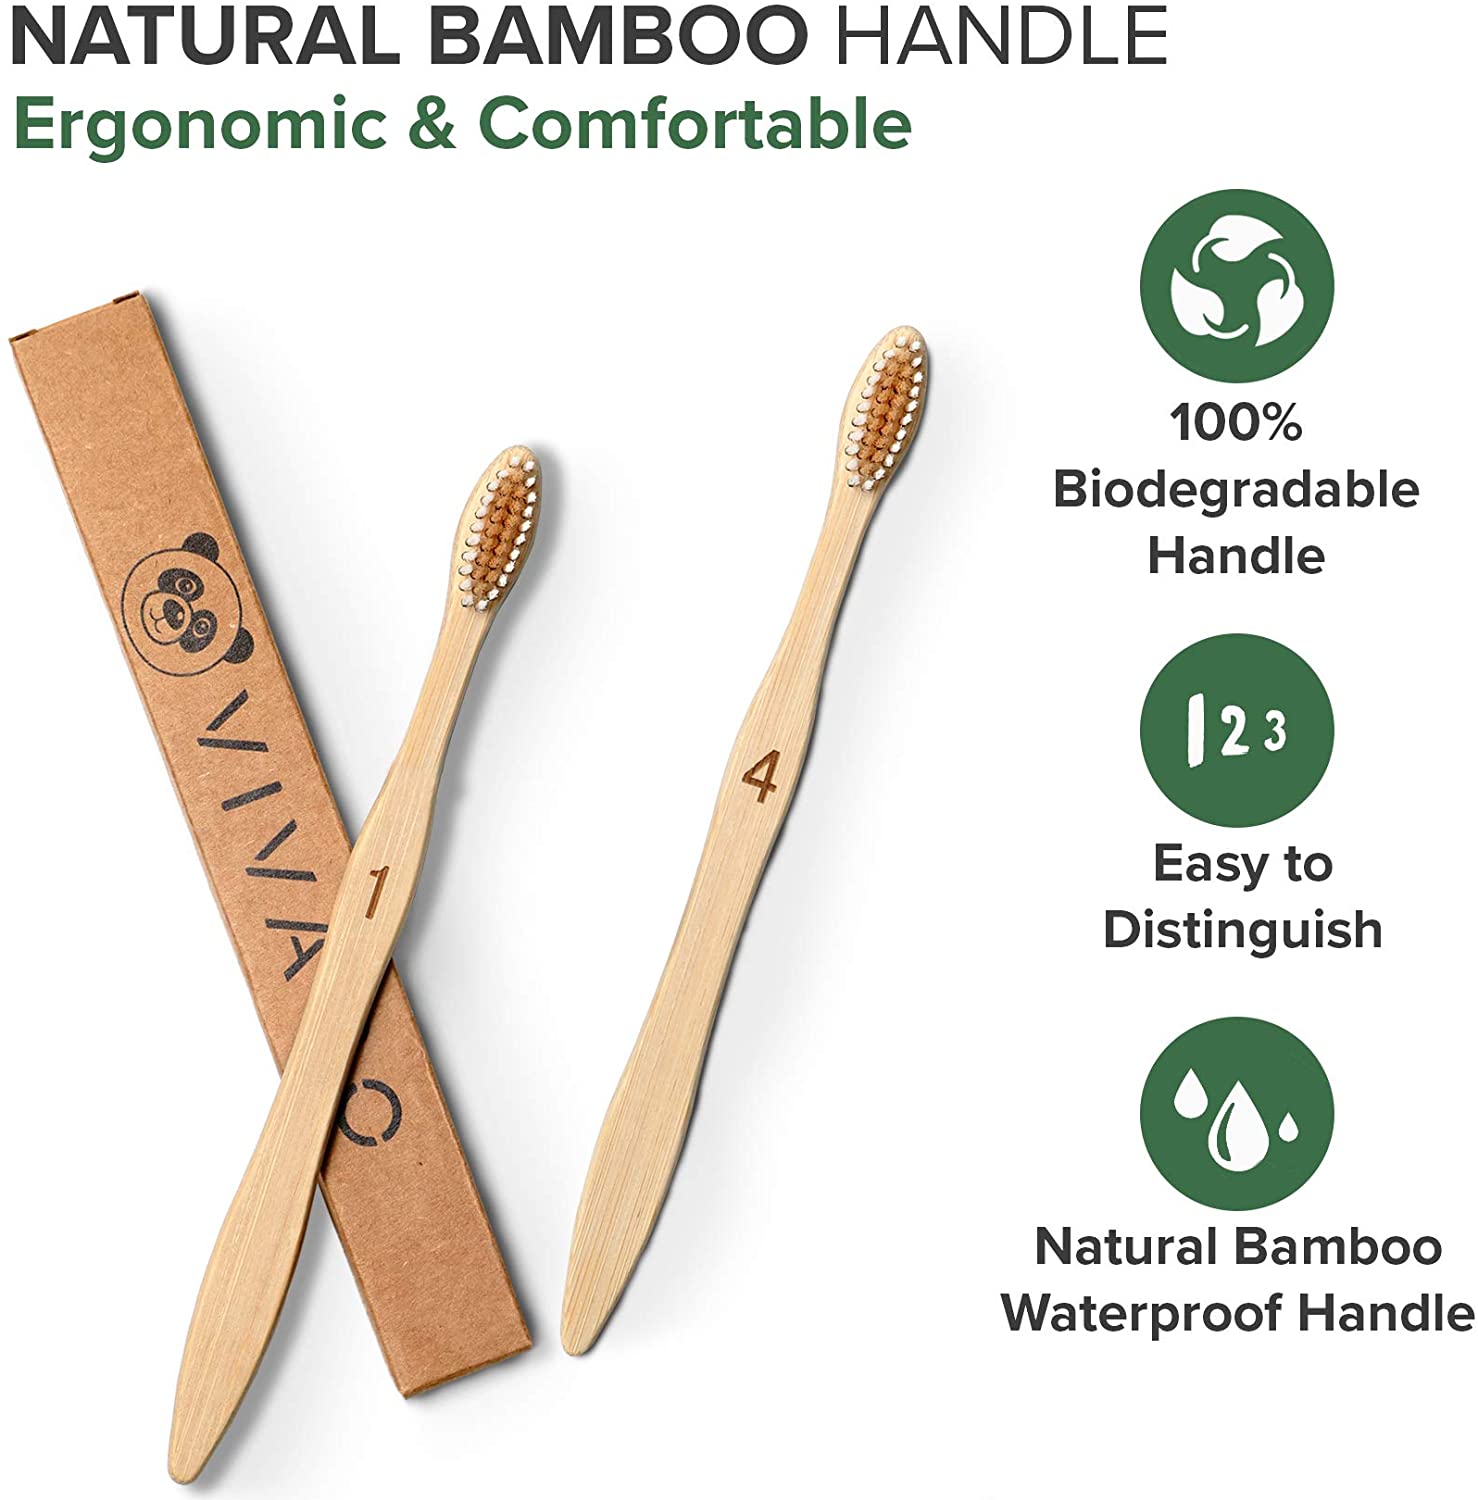 Биоразлагаемые бамбуковые зубные щетки 10 Pack - BPA Free Мягкая щетина Зубные щетки, экологически чистые, компостируемые натуральные деревянные зубные щетки